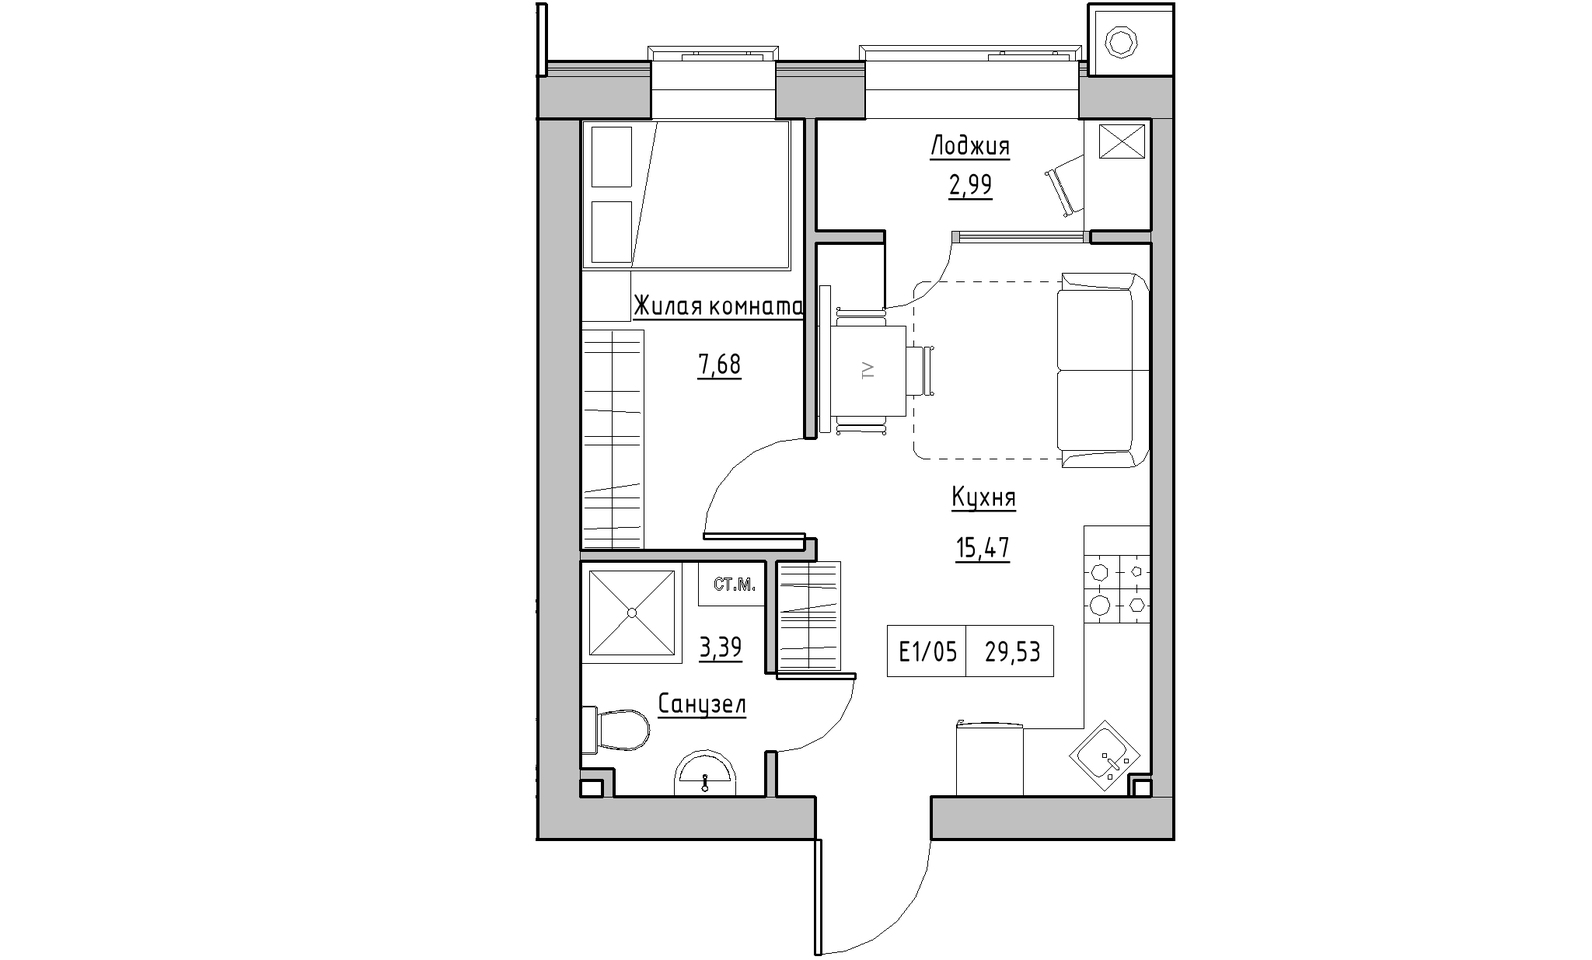 Планування 1-к квартира площею 29.53м2, KS-014-04/0006.